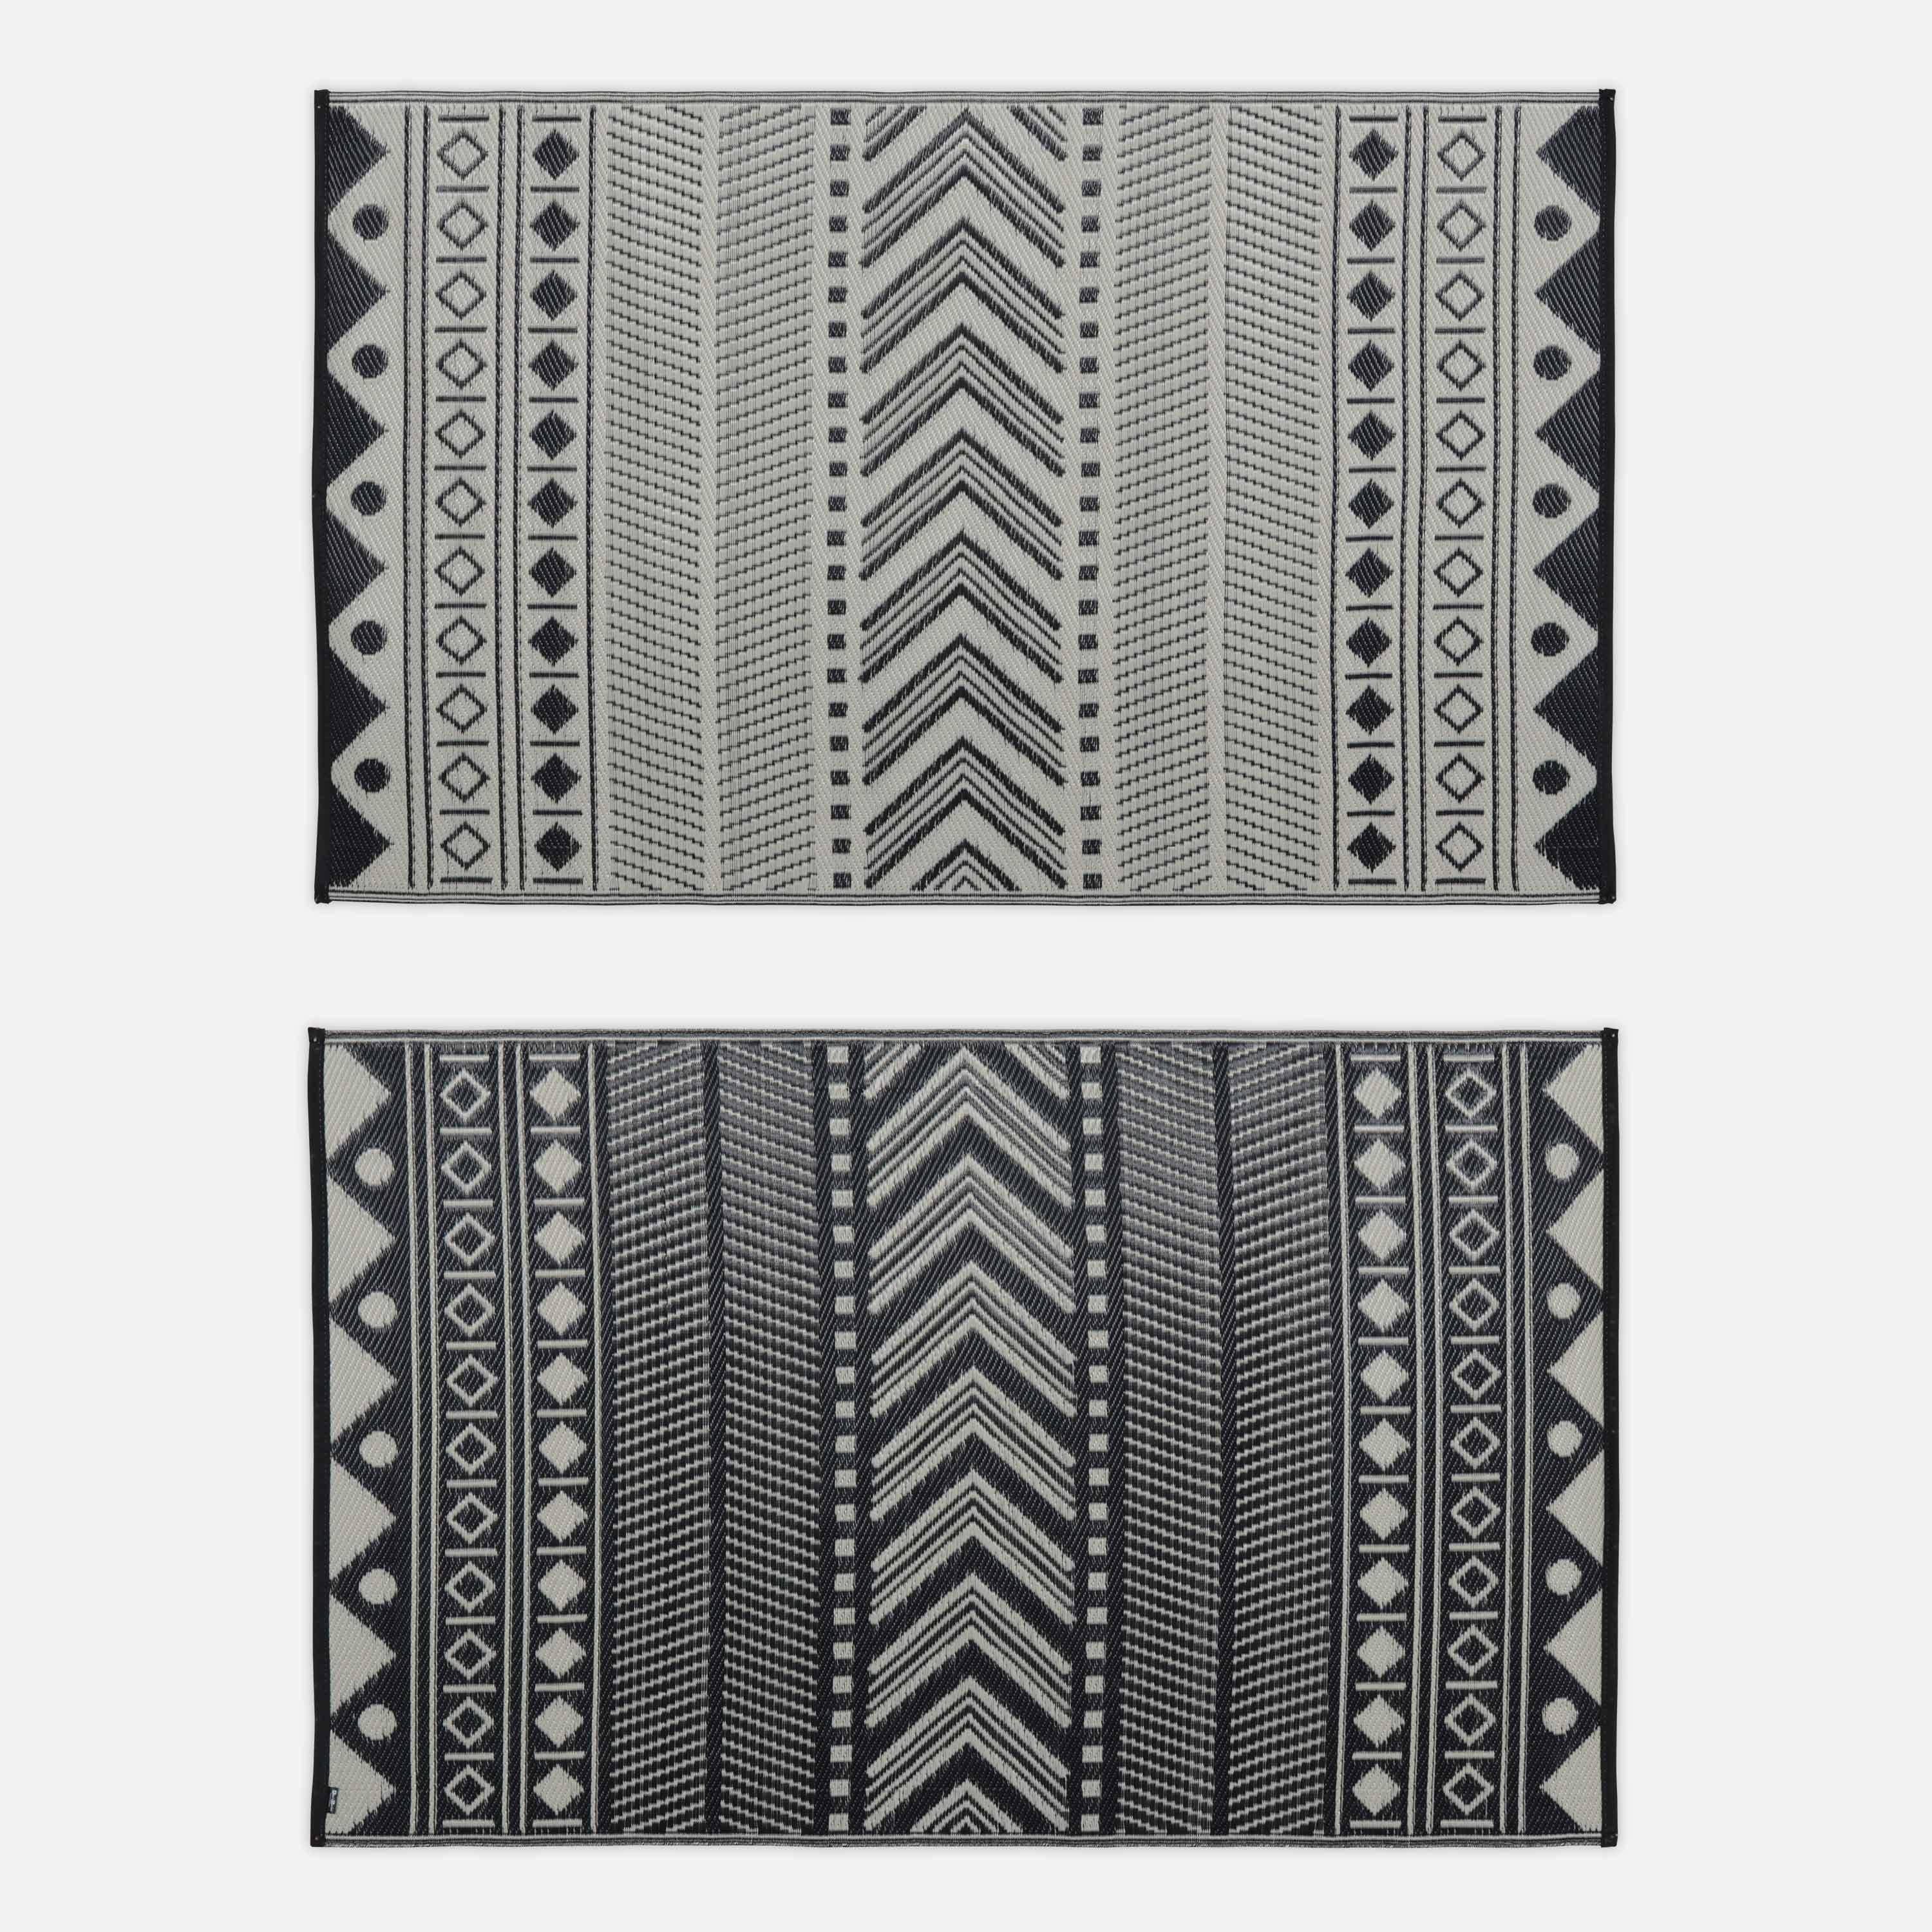 Outdoor rug - 120x180cm - Jacquard, reversible, rectangular, indoor/outdoor use - Bamako - Black-beige,sweeek,Photo2